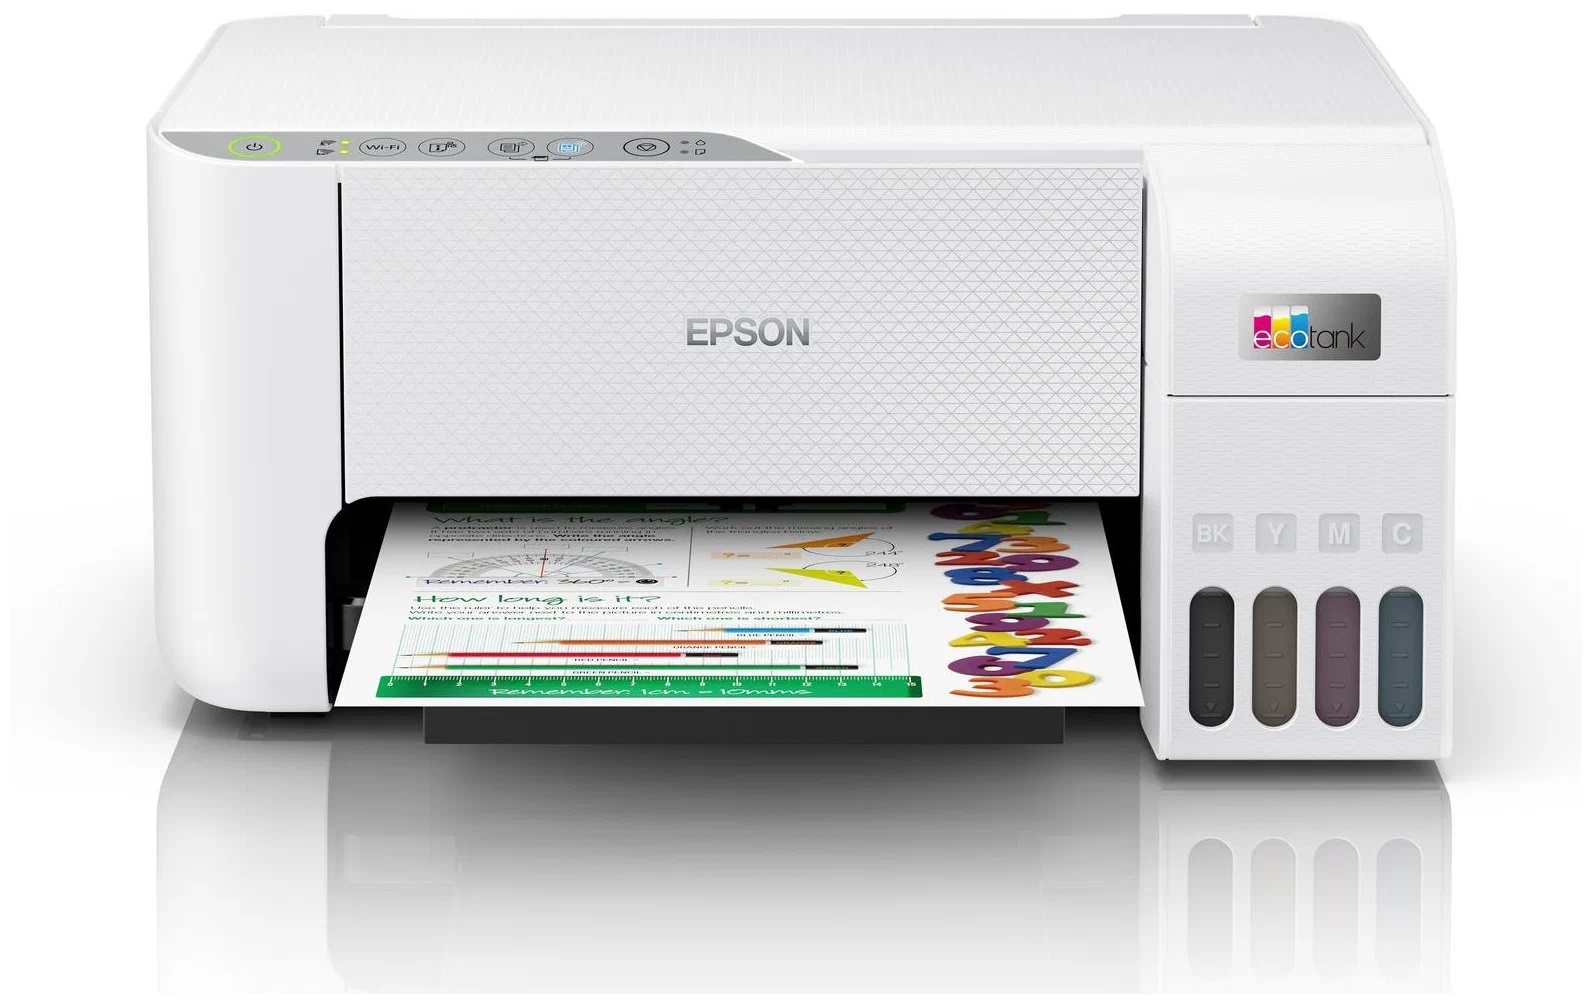 МФУ Epson EcoTank L3256 А4 цветное: принтер/копир/сканер, 33/15 стр./мин.(чб/цвет), крышка оригиналов, USB, WiFi, Wi-Fi Direct, в комплекте чернила 8 